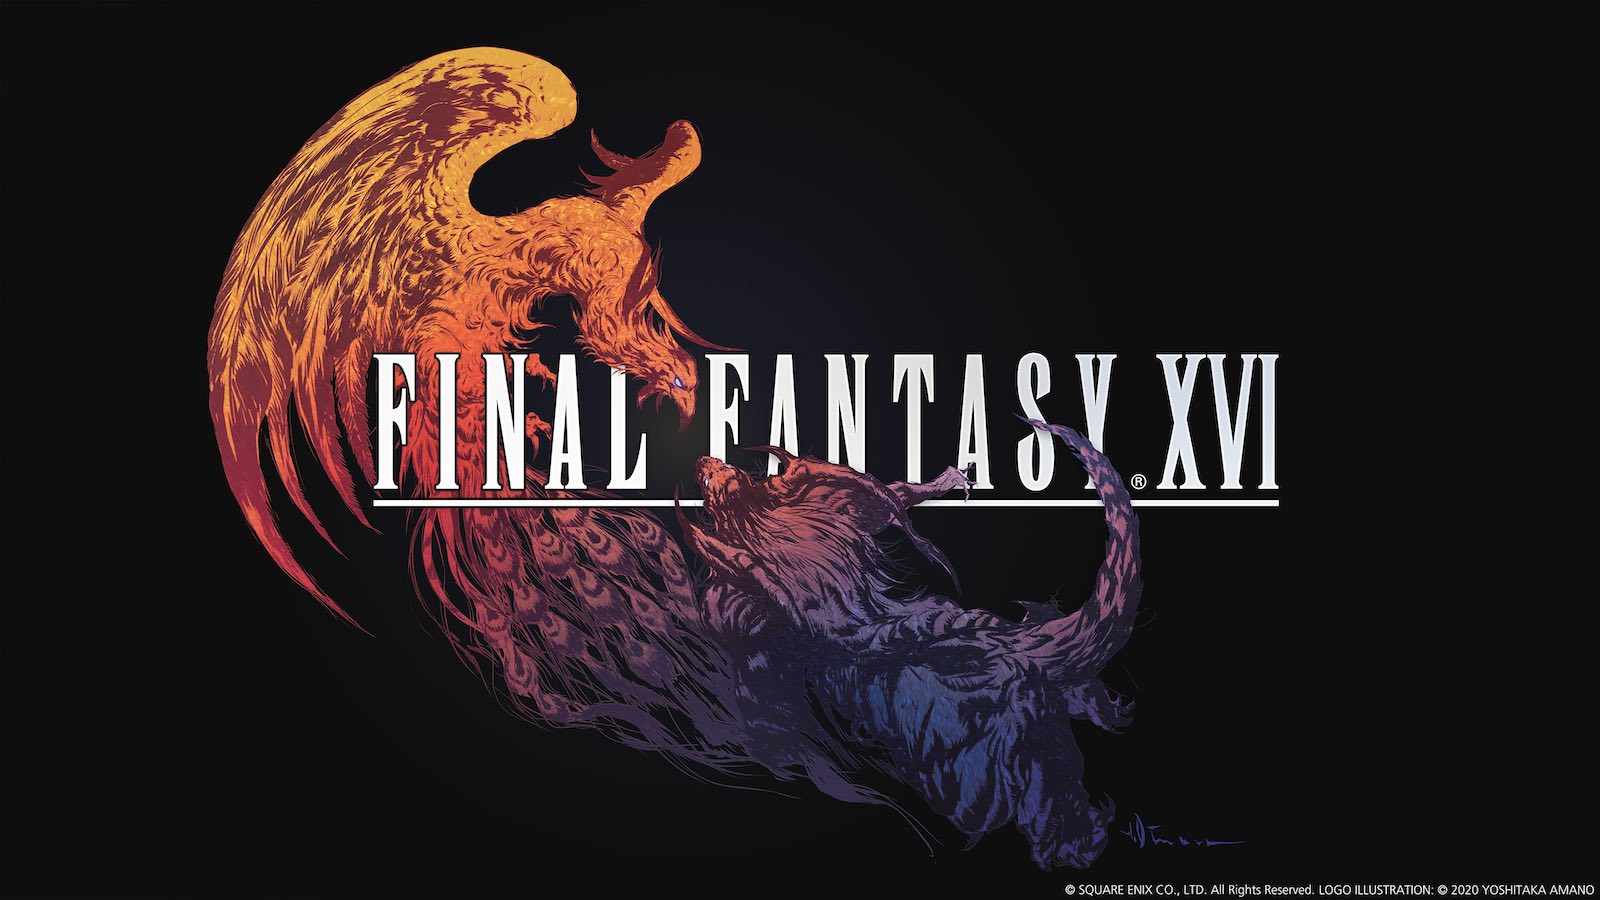 Final-Fantasy-XVI-Square-Enix-ver-ffentlicht-Launch-Trailer-zum-neuesten-Spiel-der-Reihe